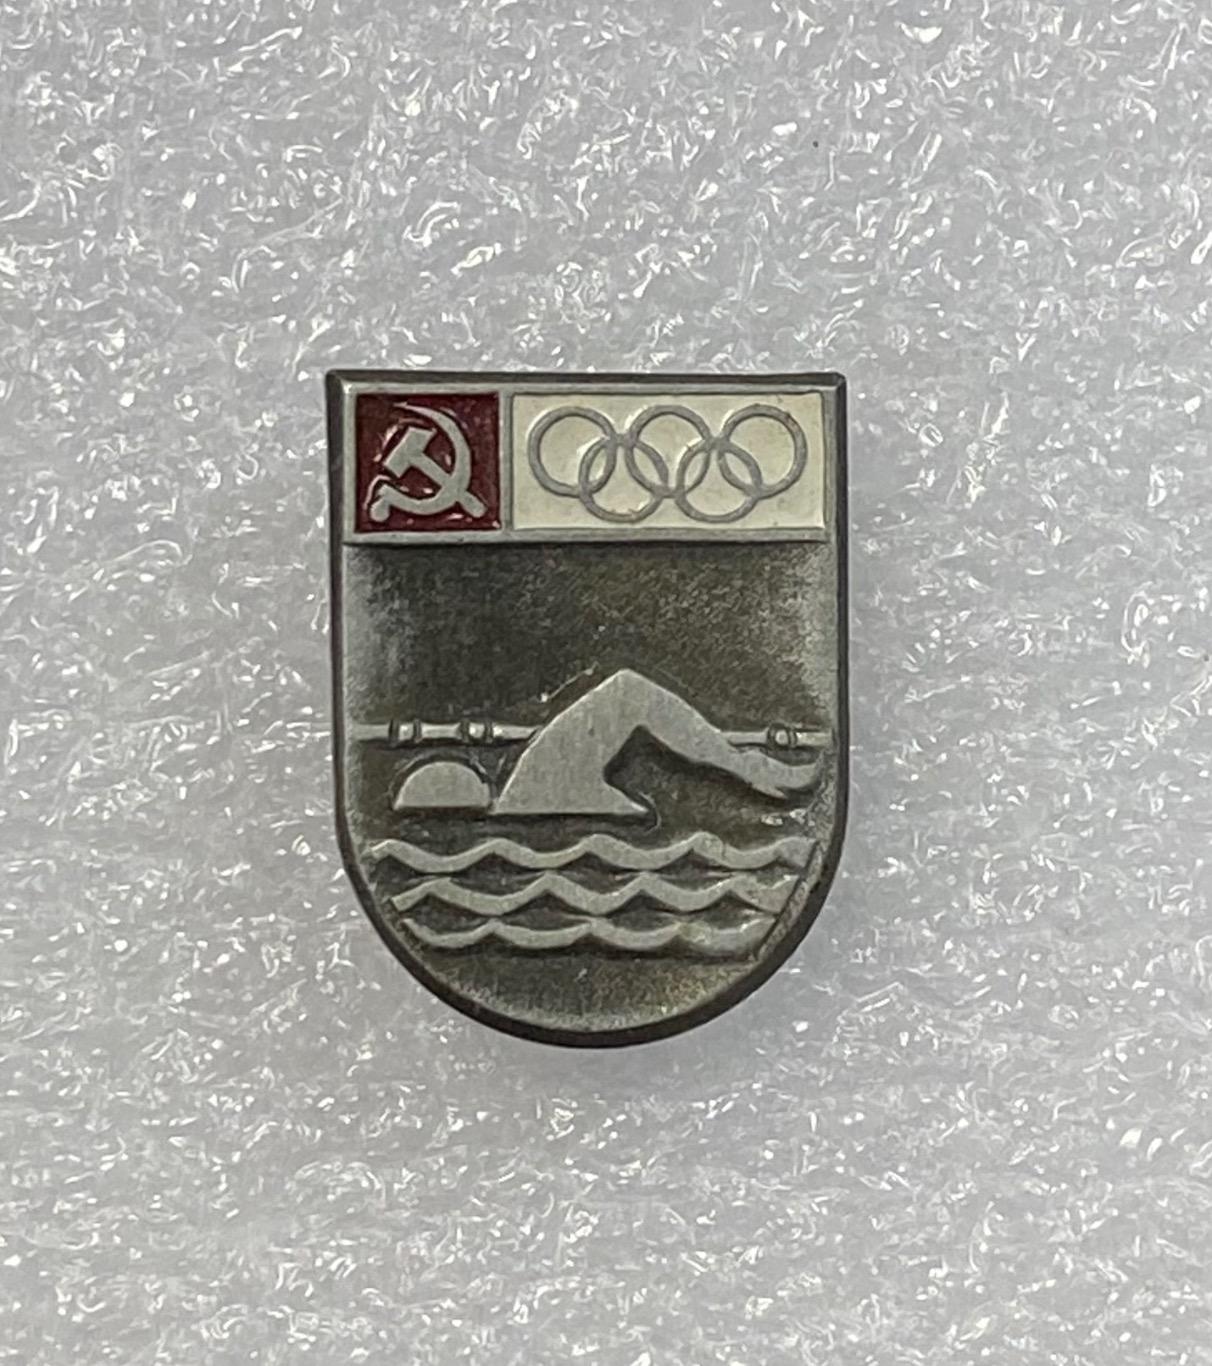 Олимпиада, плавание олимпийский вид спорта в СССР, значок